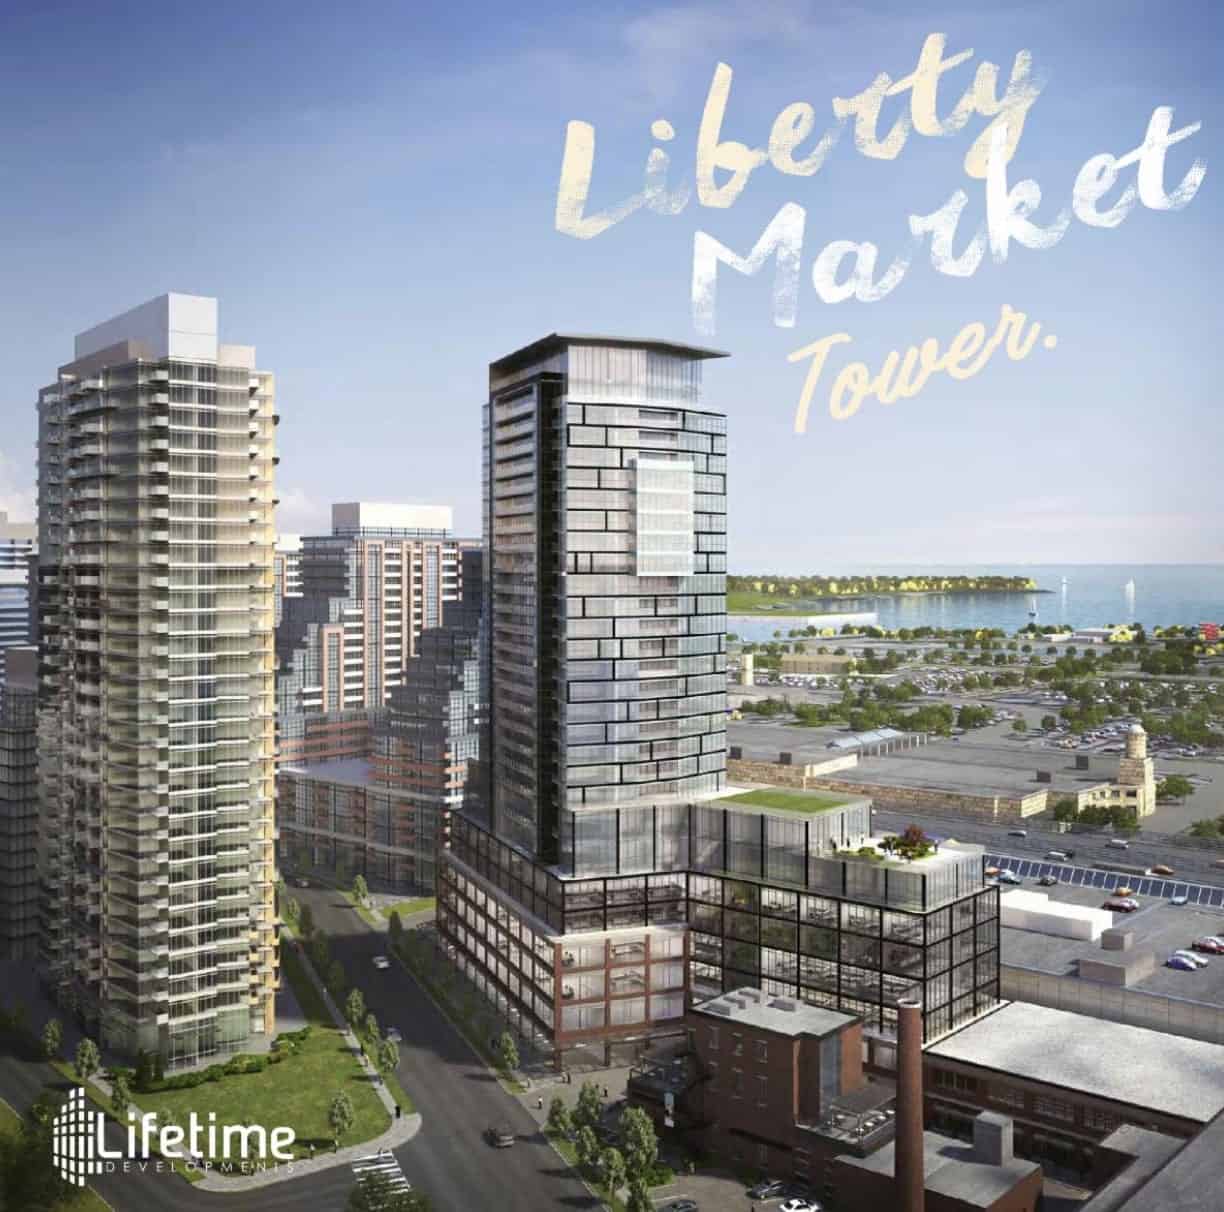 Liberty Market Tower Condos Exterior Image Rendering True Condos